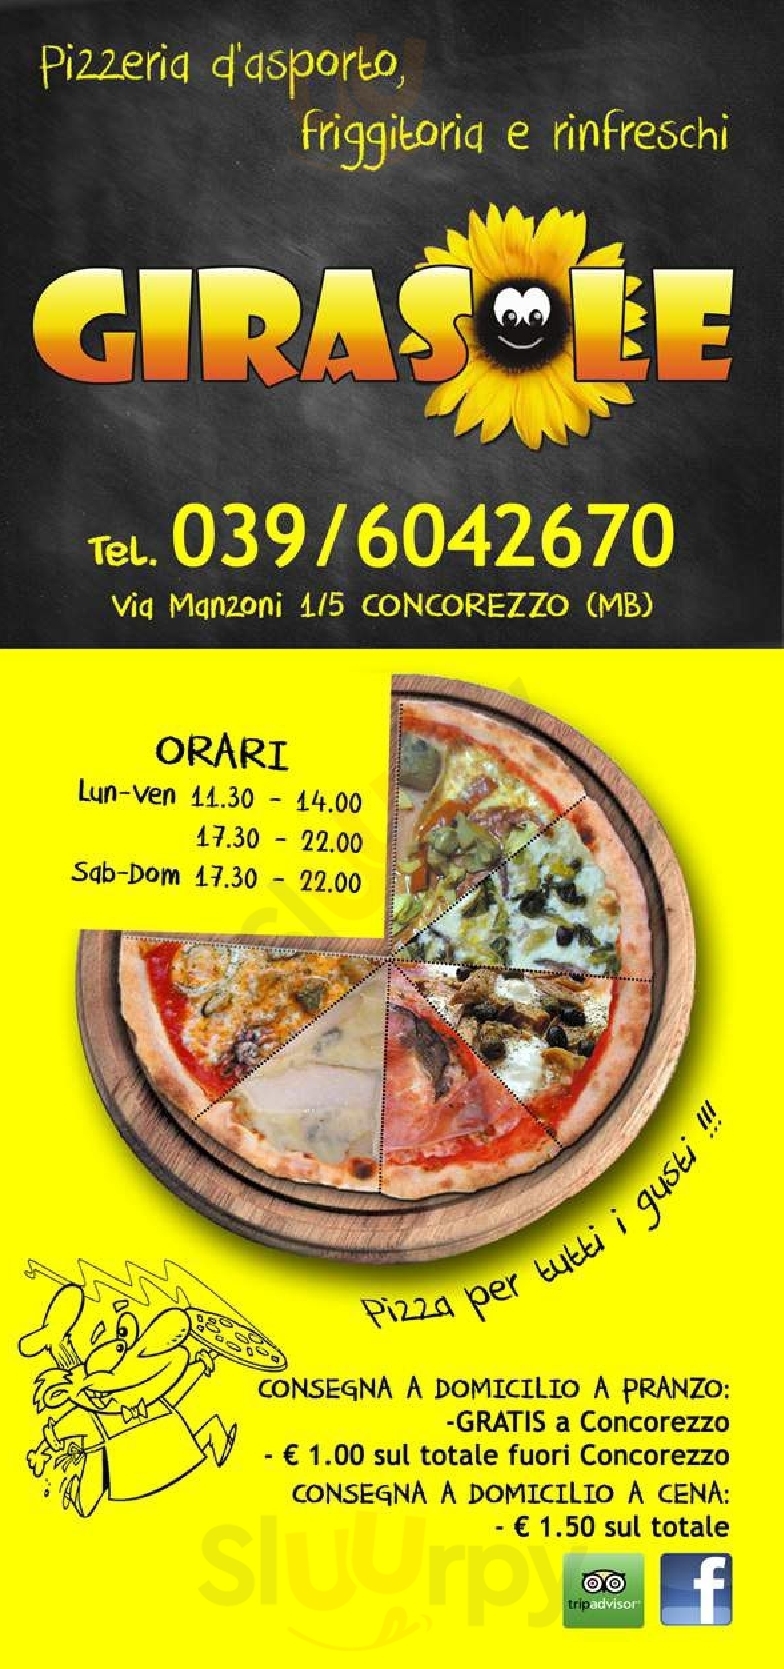 Pizzeria Girasole Concorezzo menù 1 pagina